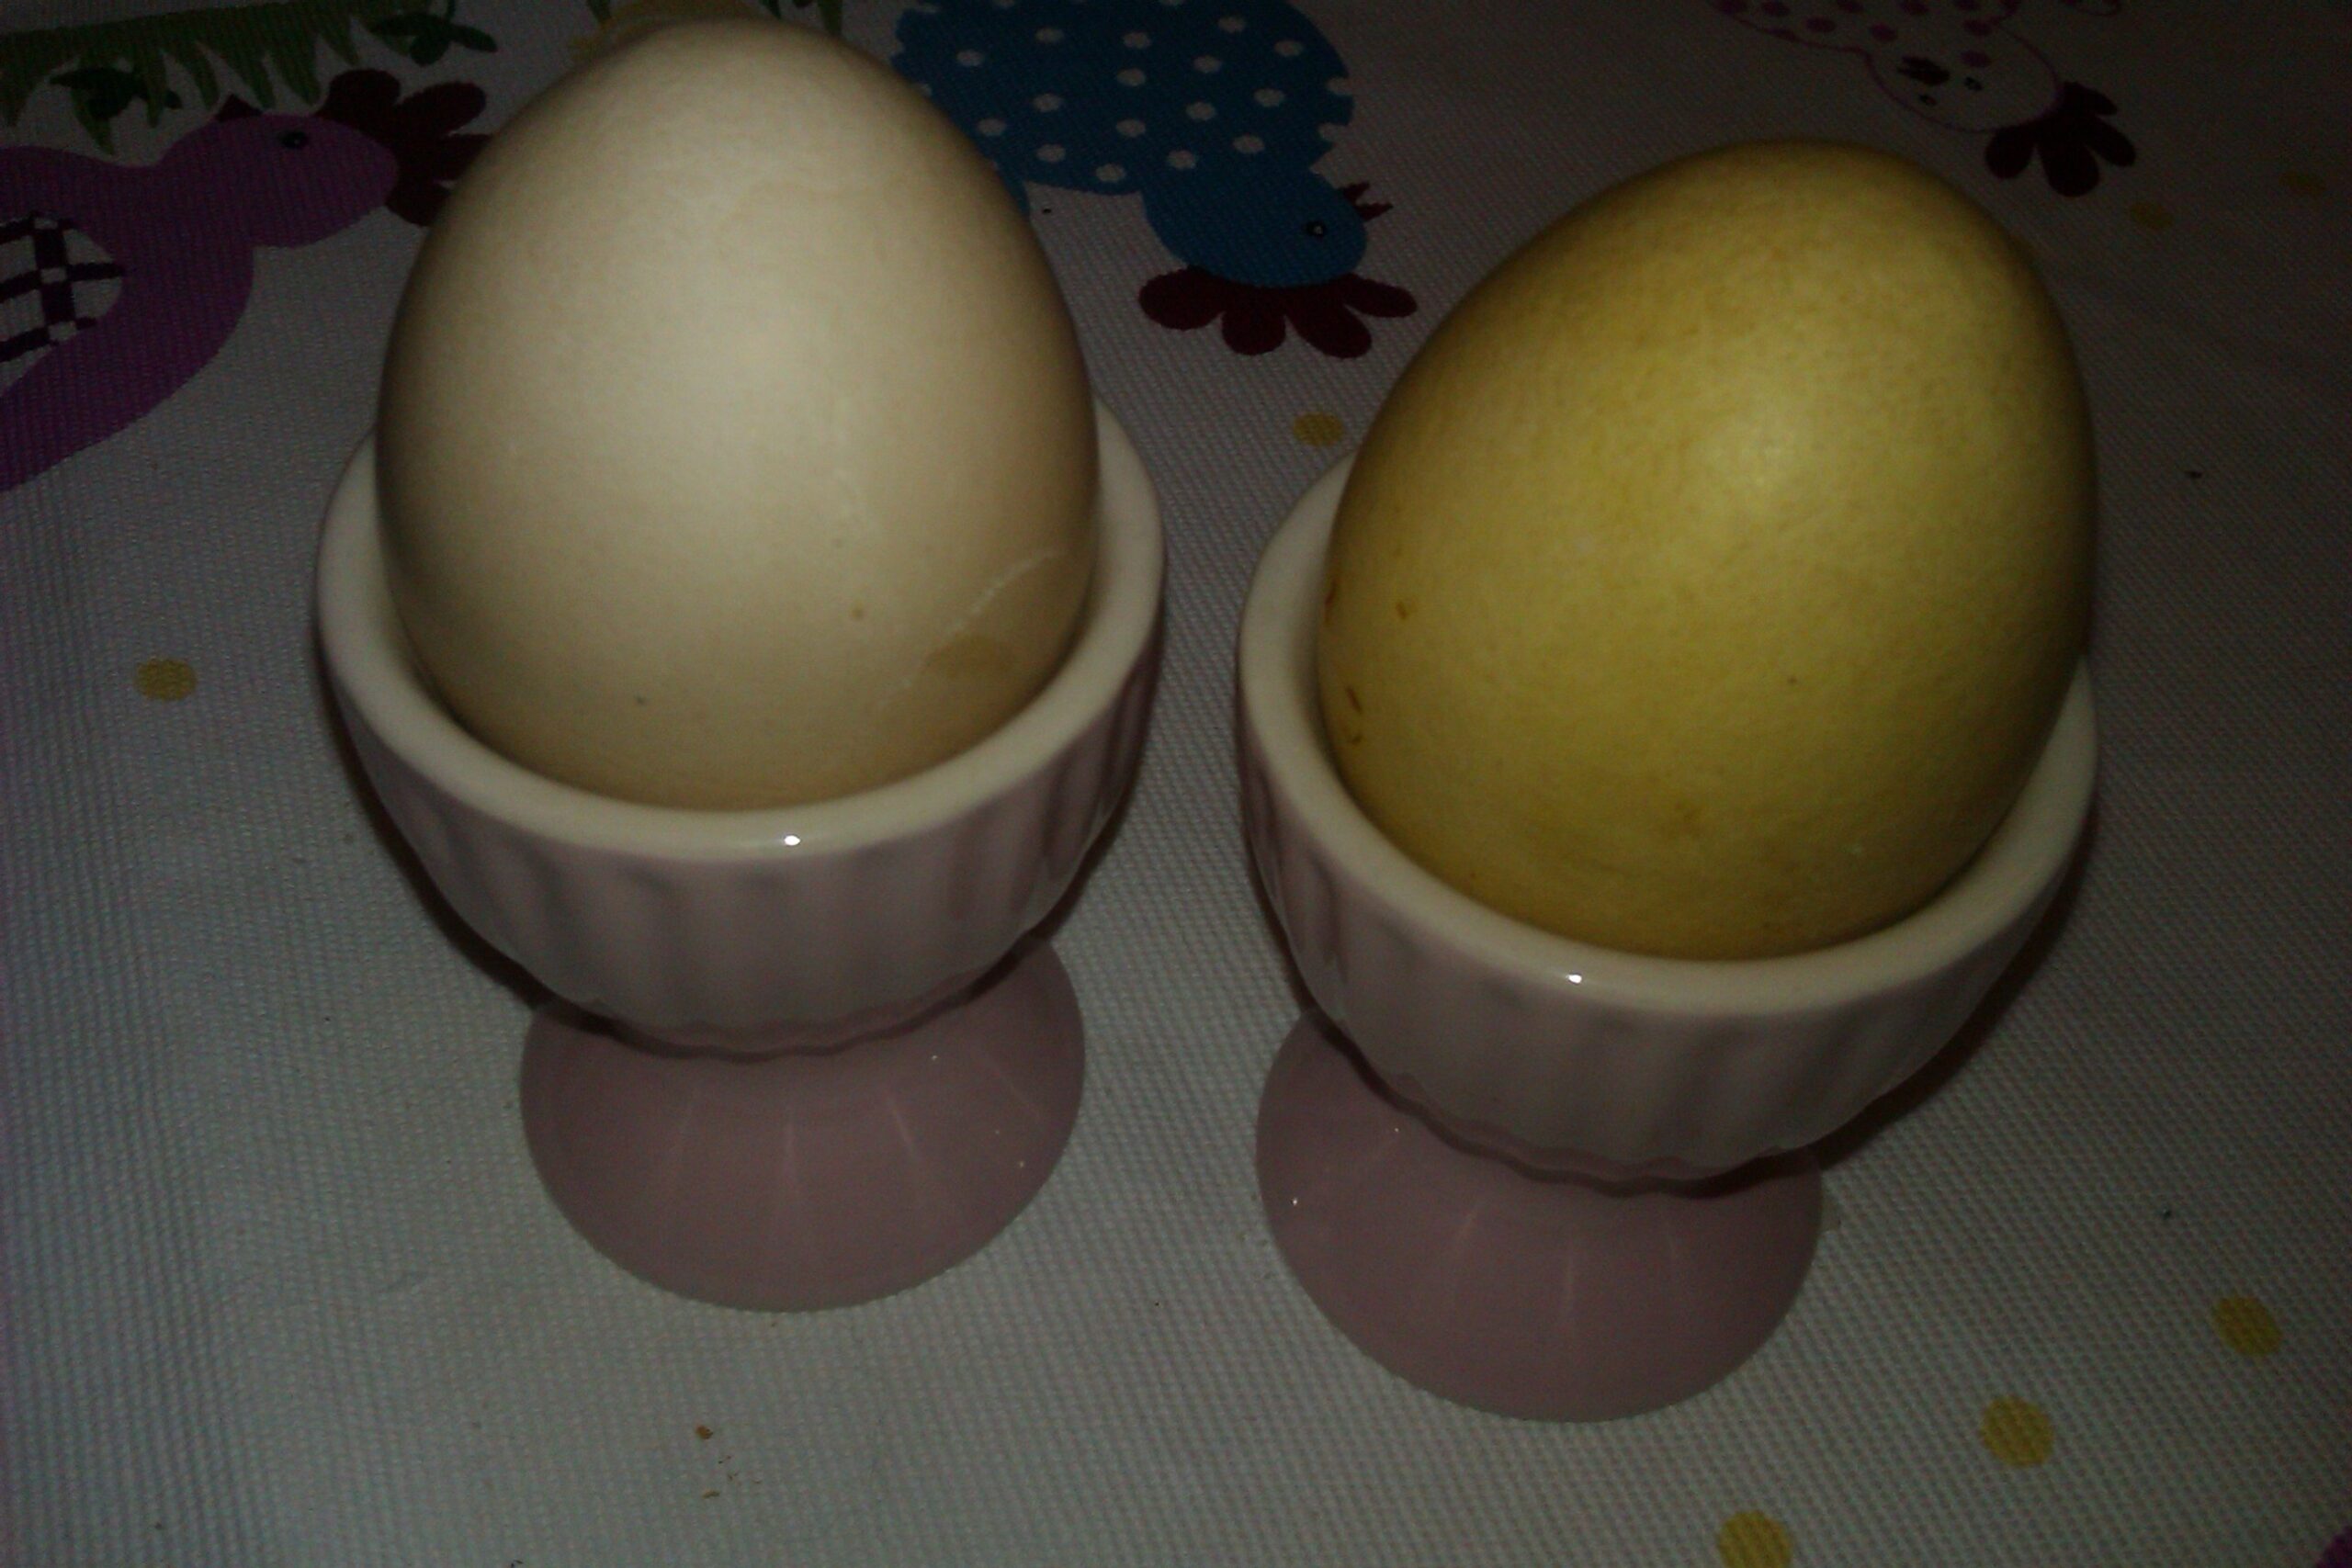 Två ägg i rosa äggkoppar. Det ena gult, färgat med saffran, det andra beige, färgat med rödbeta